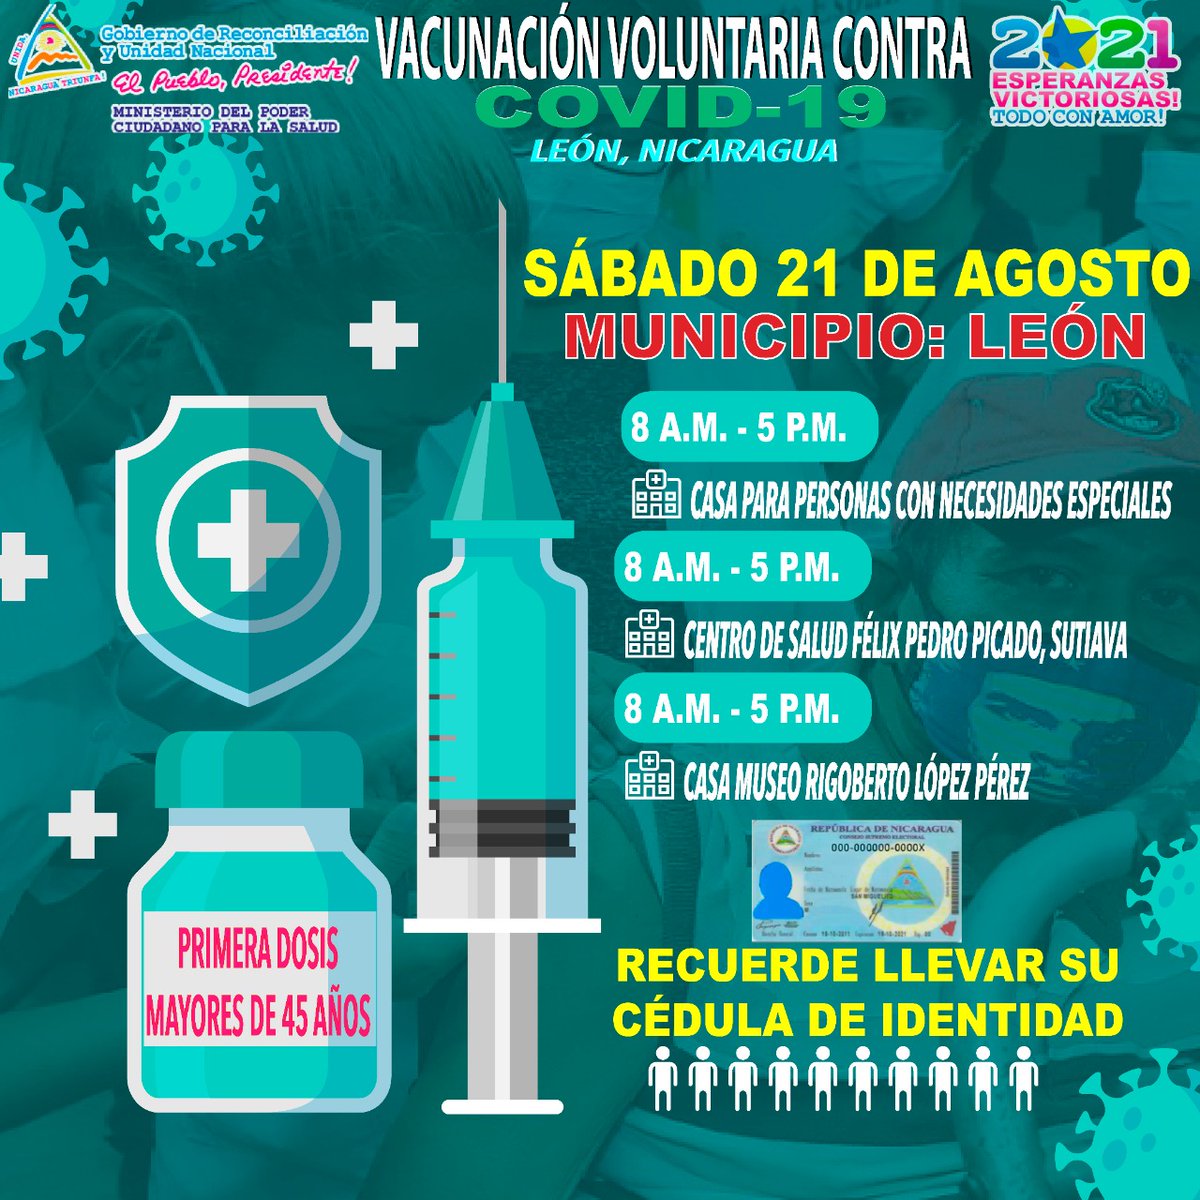 Excelentes Noticias para los pobladores de león, mayores  45 en adelante el día Sábado 21 de Agosto podrán acudir a vacunarse 💉💉 con la Primera dosis en contra el Covid-19. 🦠🦠 Más información👇👇
#VacunandonosPuebloQueVence 
#LeonRevolucion 
#VivaDaniel2021